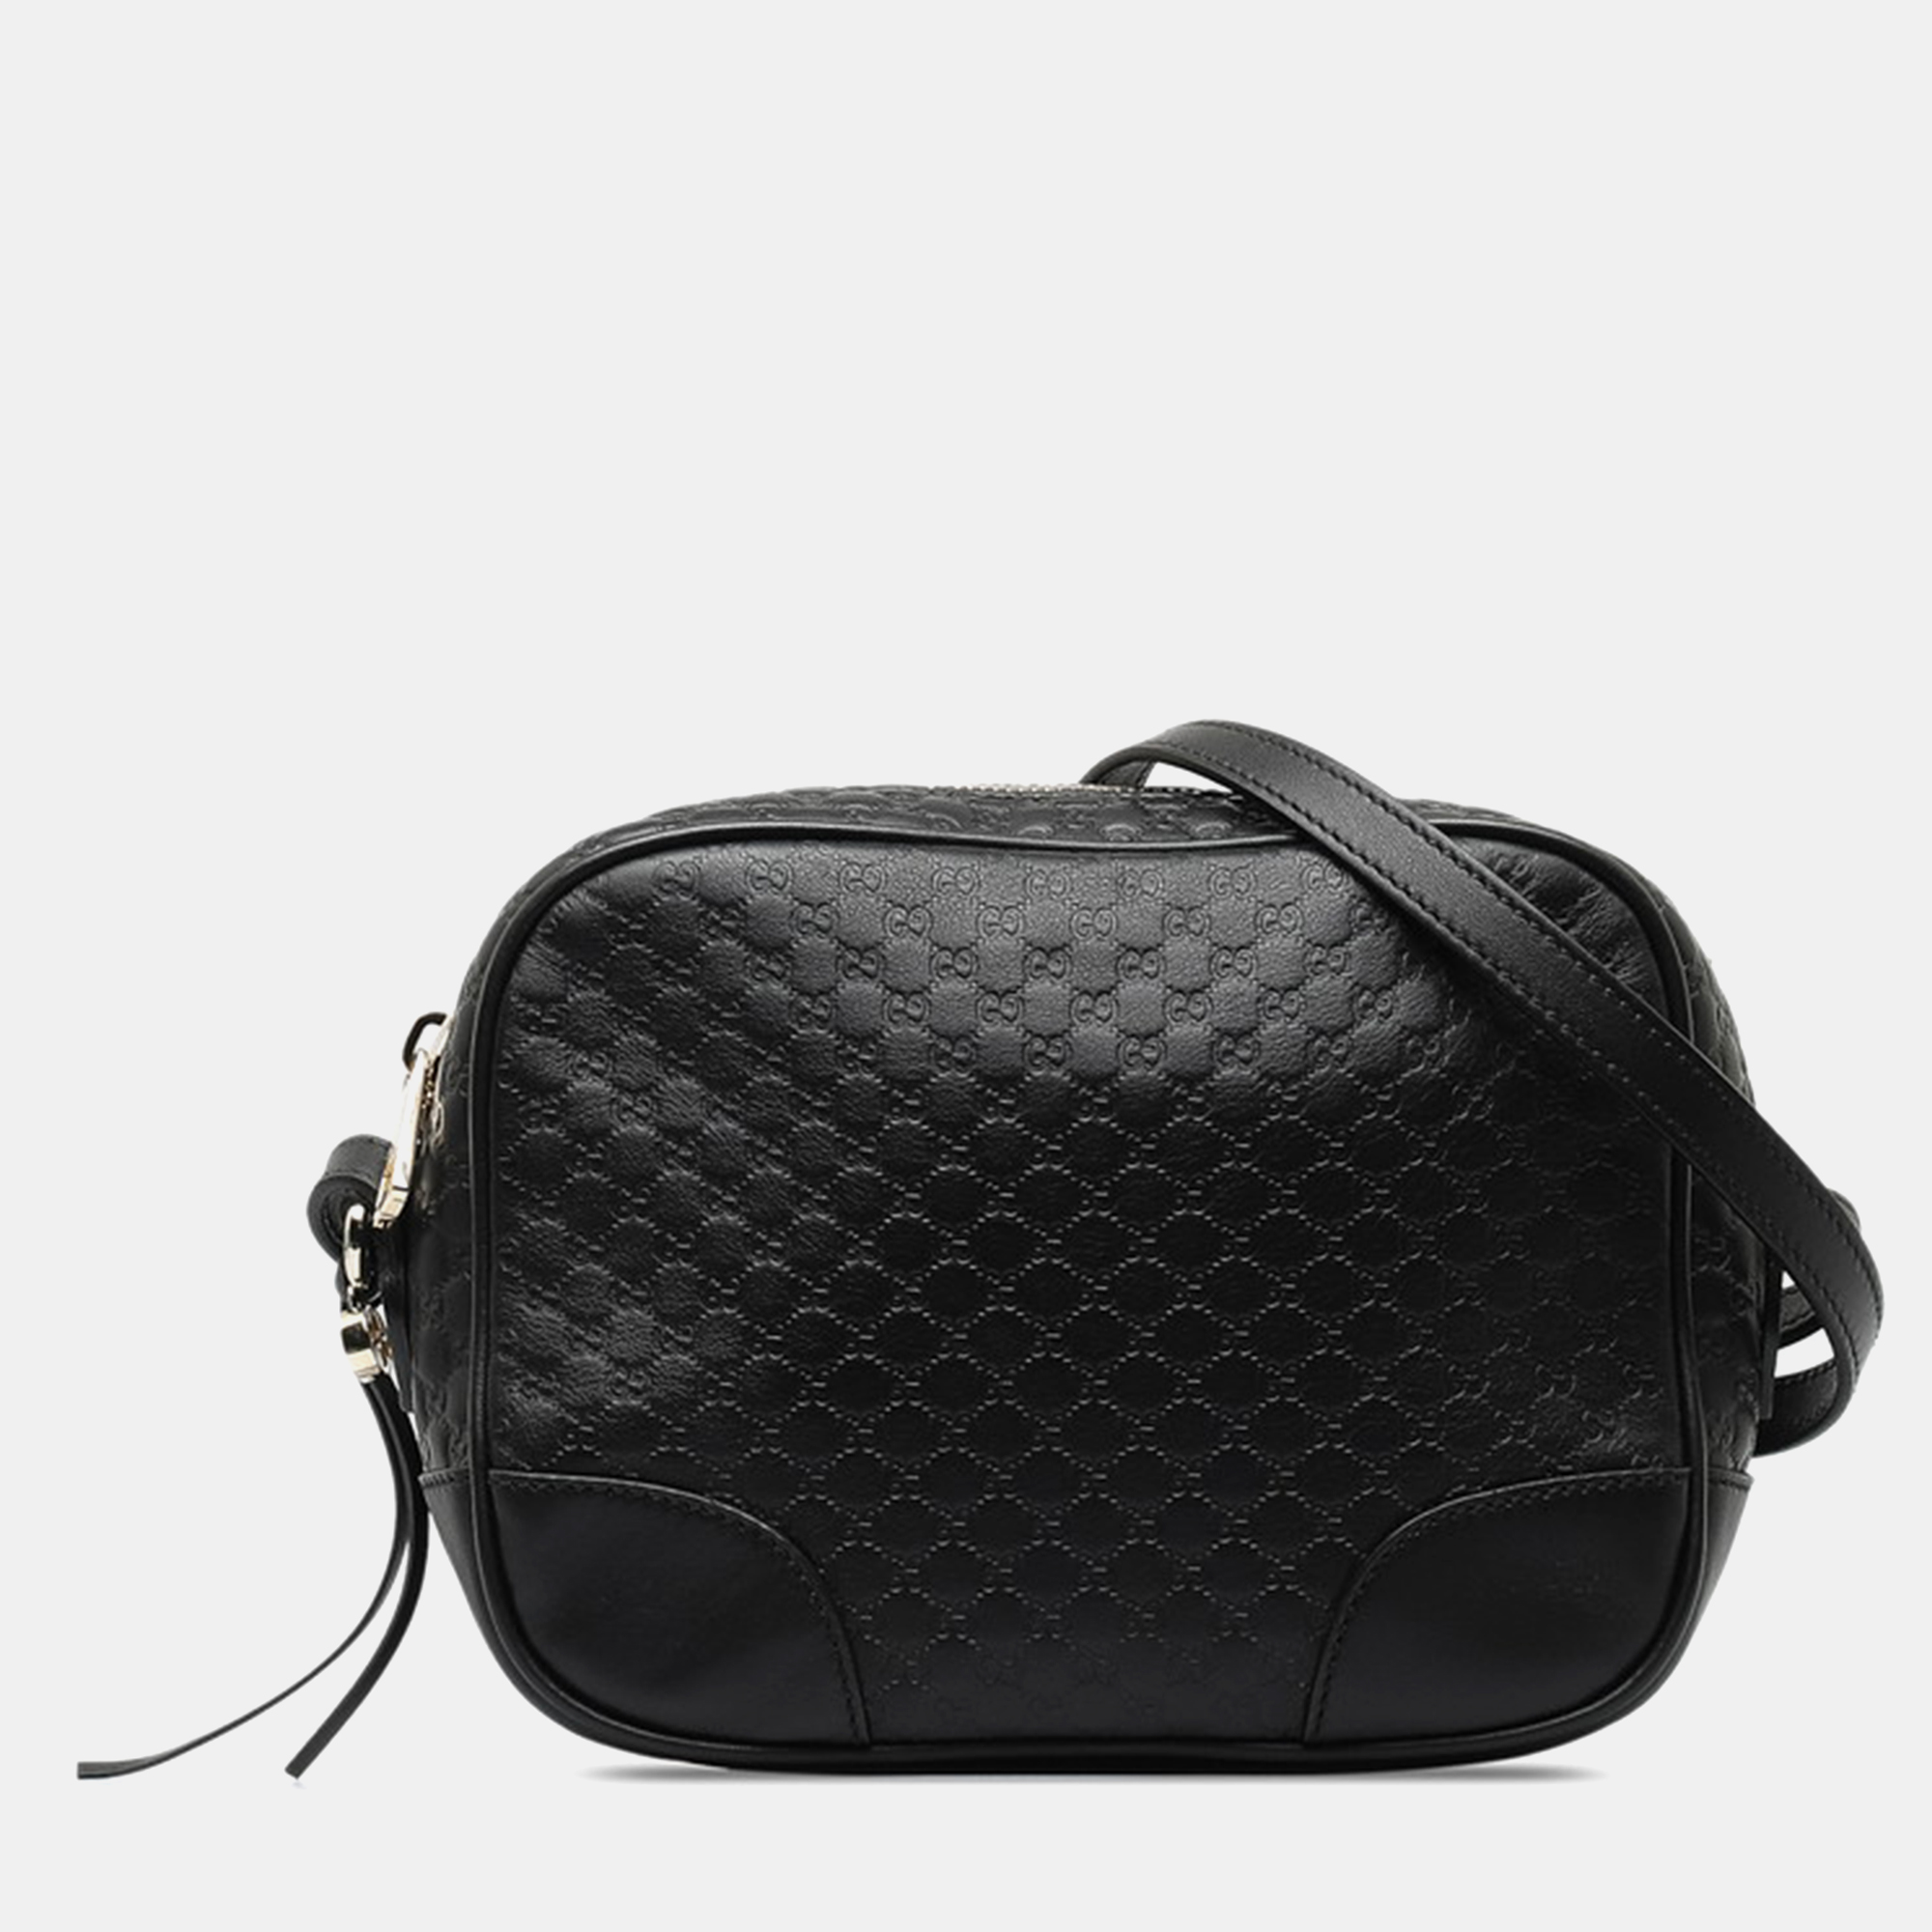 

Gucci Black Leather Microguccissima Camera Bag